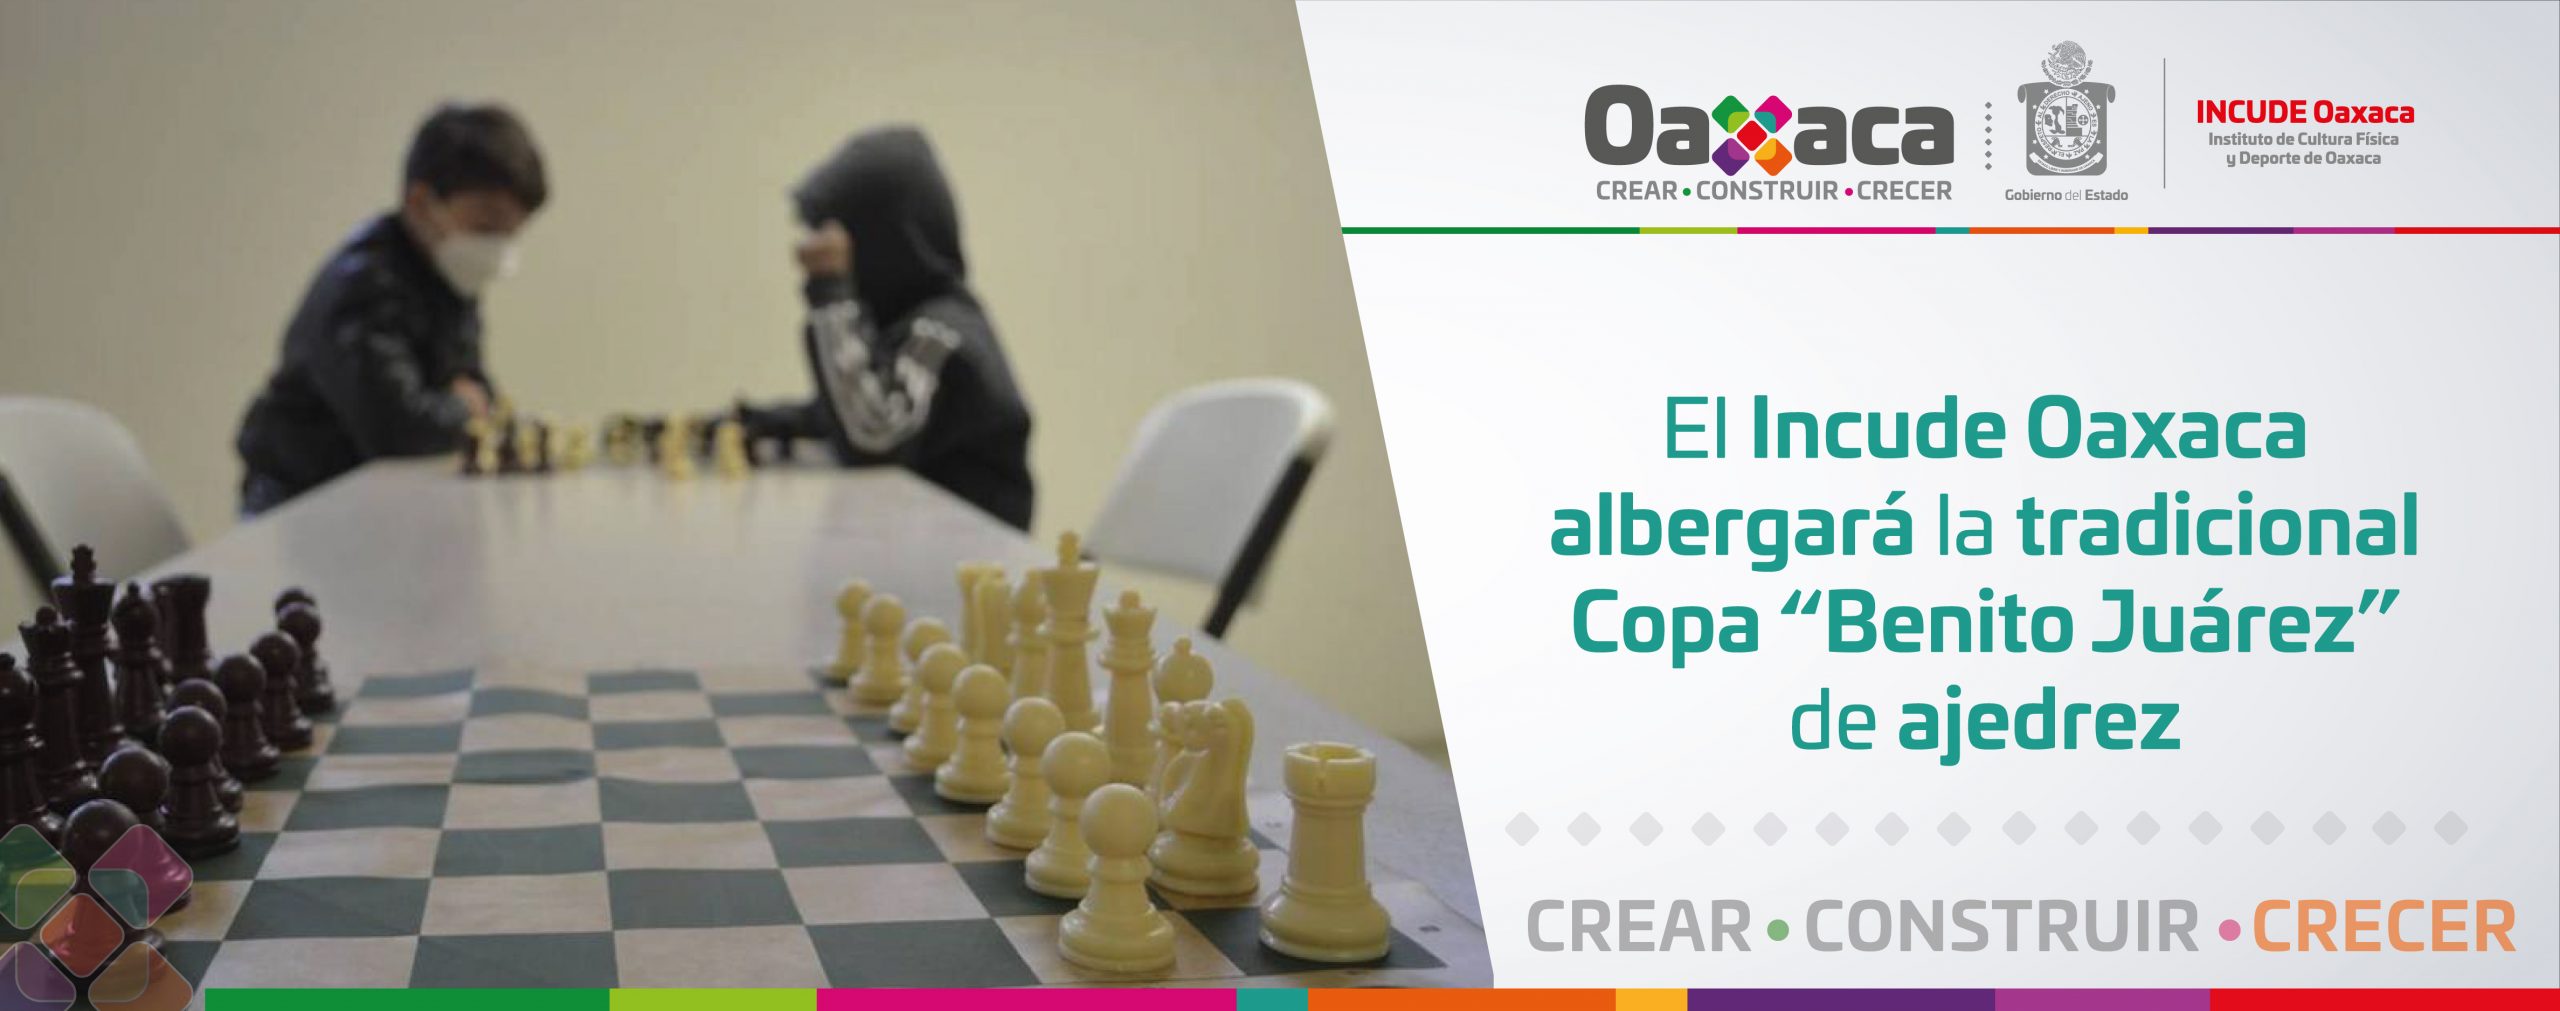 El Incude Oaxaca albergará la tradicional Copa “Benito Juárez” de ajedrez